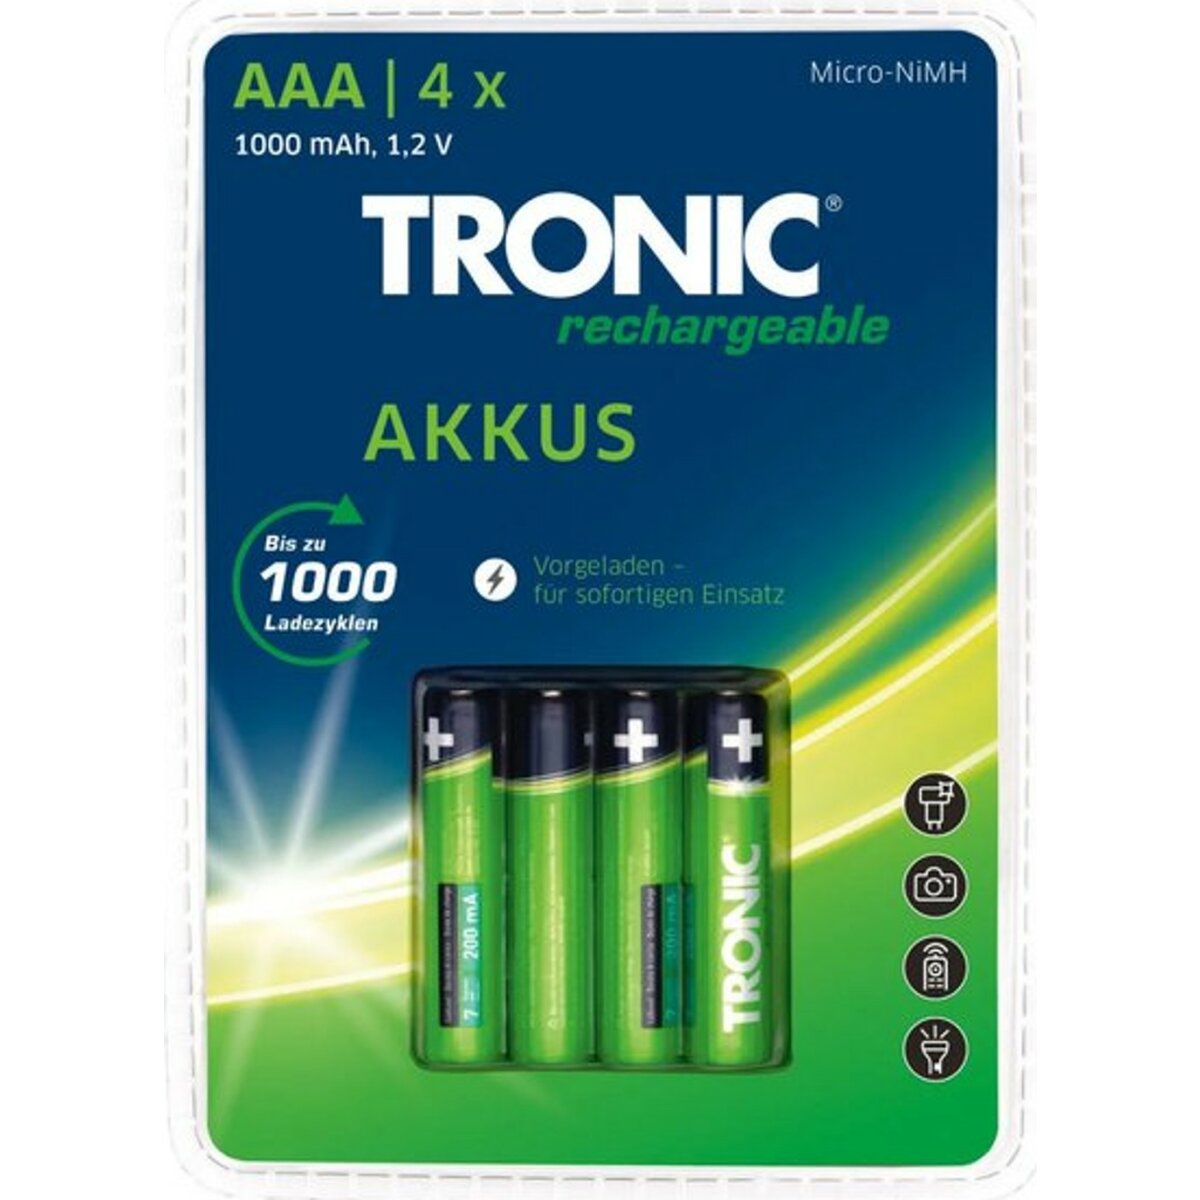 TRONIC Akku Ready 2 Use 4 Stück, 11/45 AAA/Micro/HR03/HRMRI03 -Ni-MH